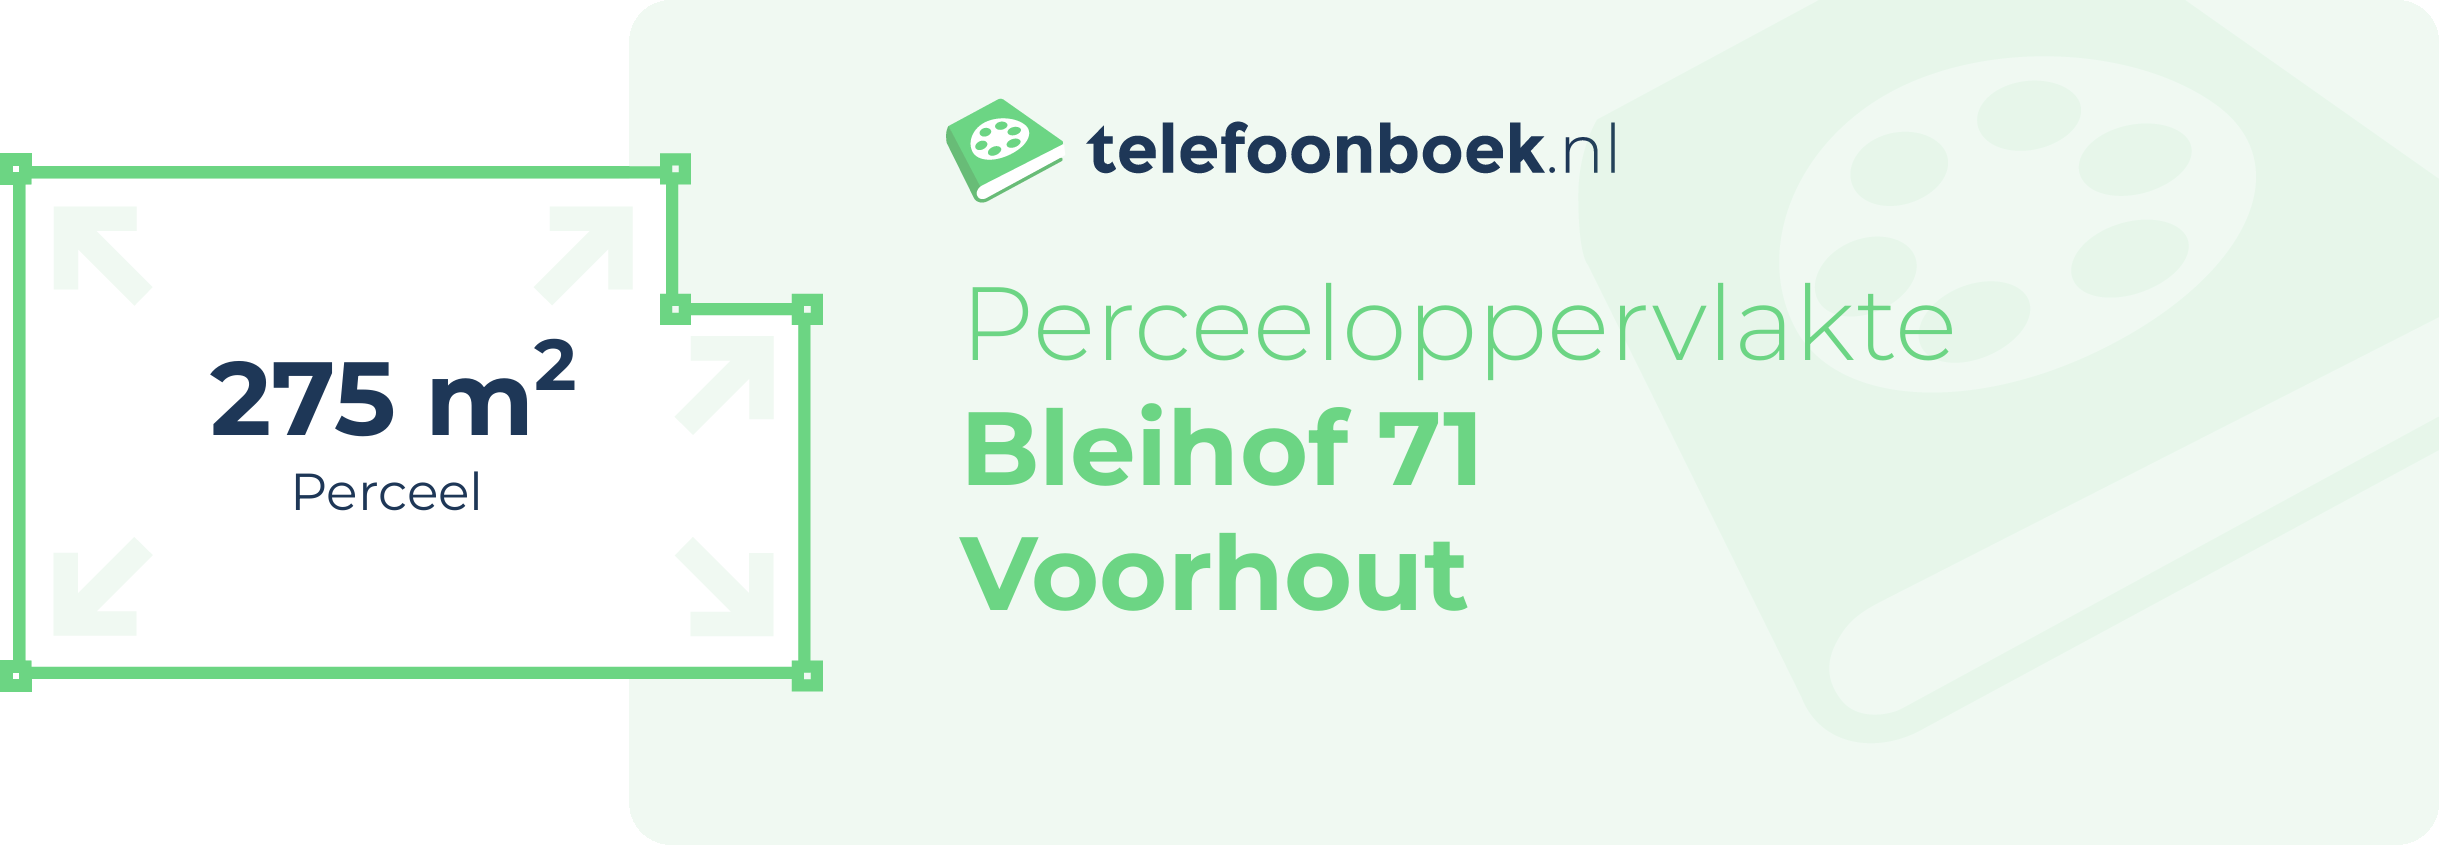 Perceeloppervlakte Bleihof 71 Voorhout